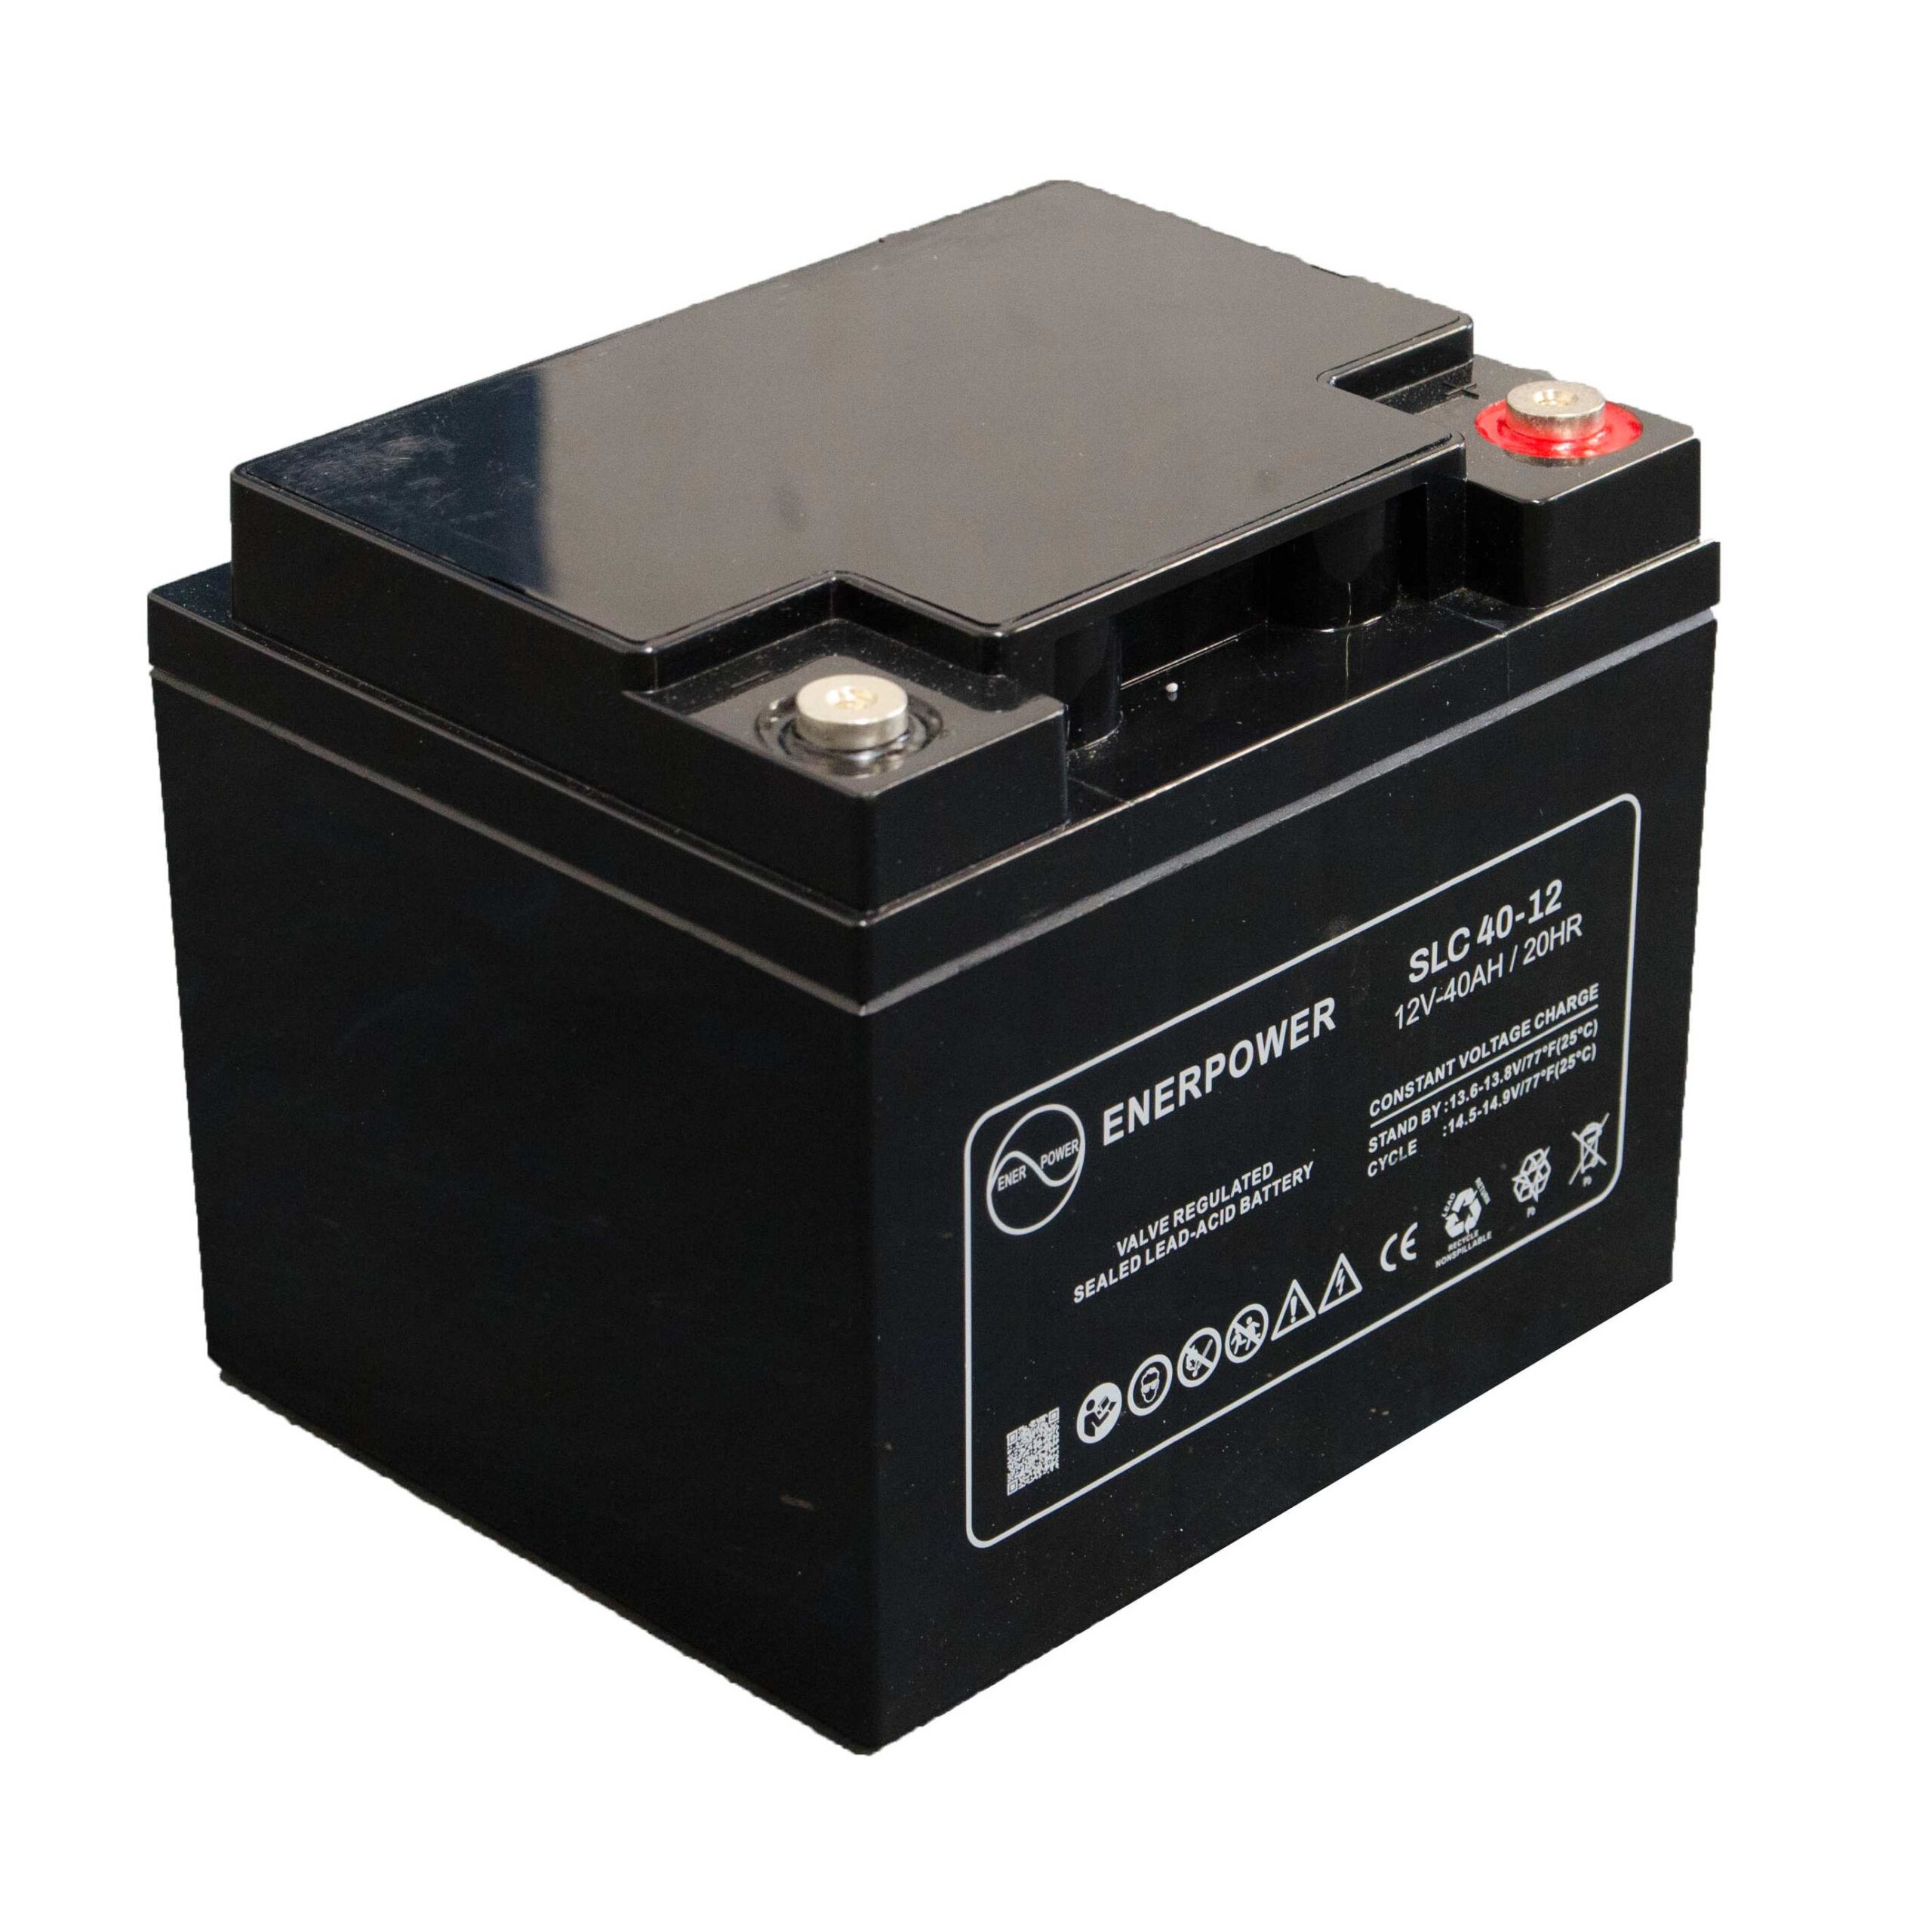 SLC 40-12 12V 40Ah AGM ENERPOWER Batterie